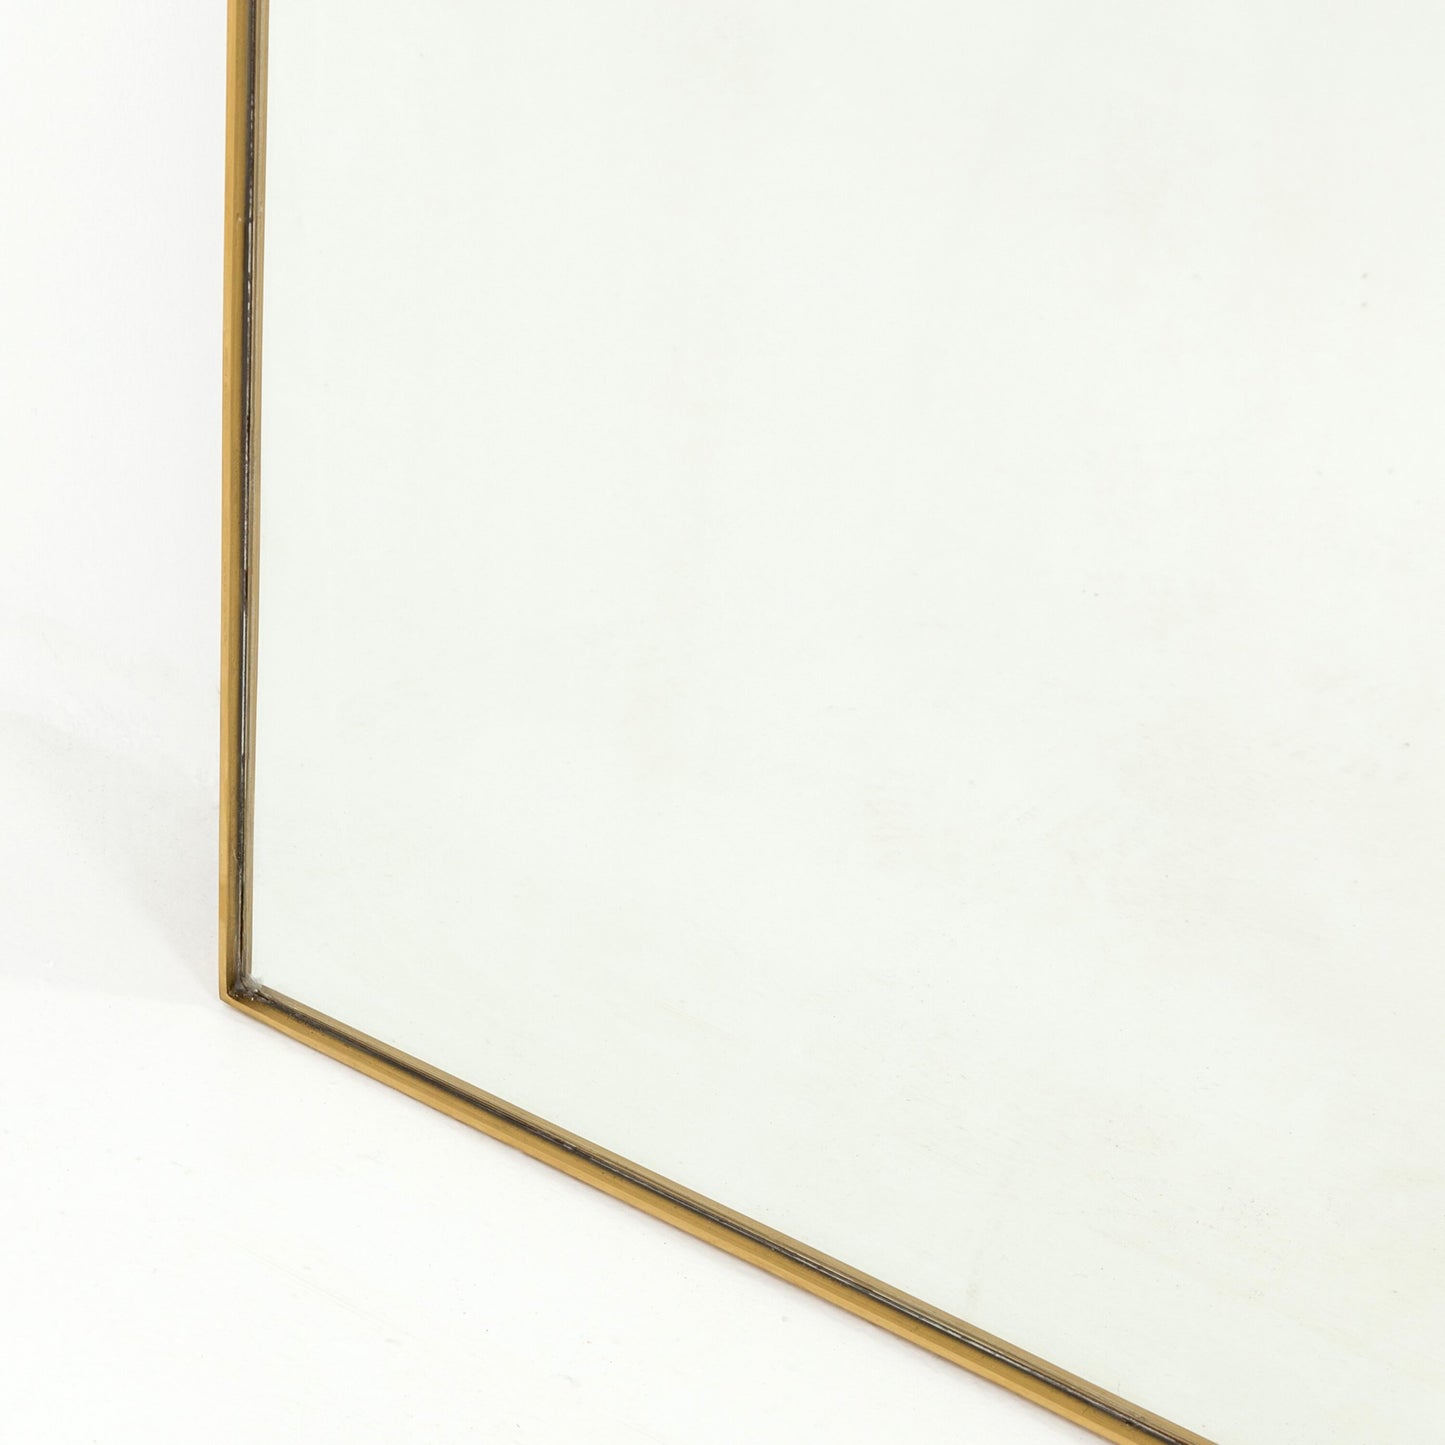 Bellvue floor mirror-polished brass